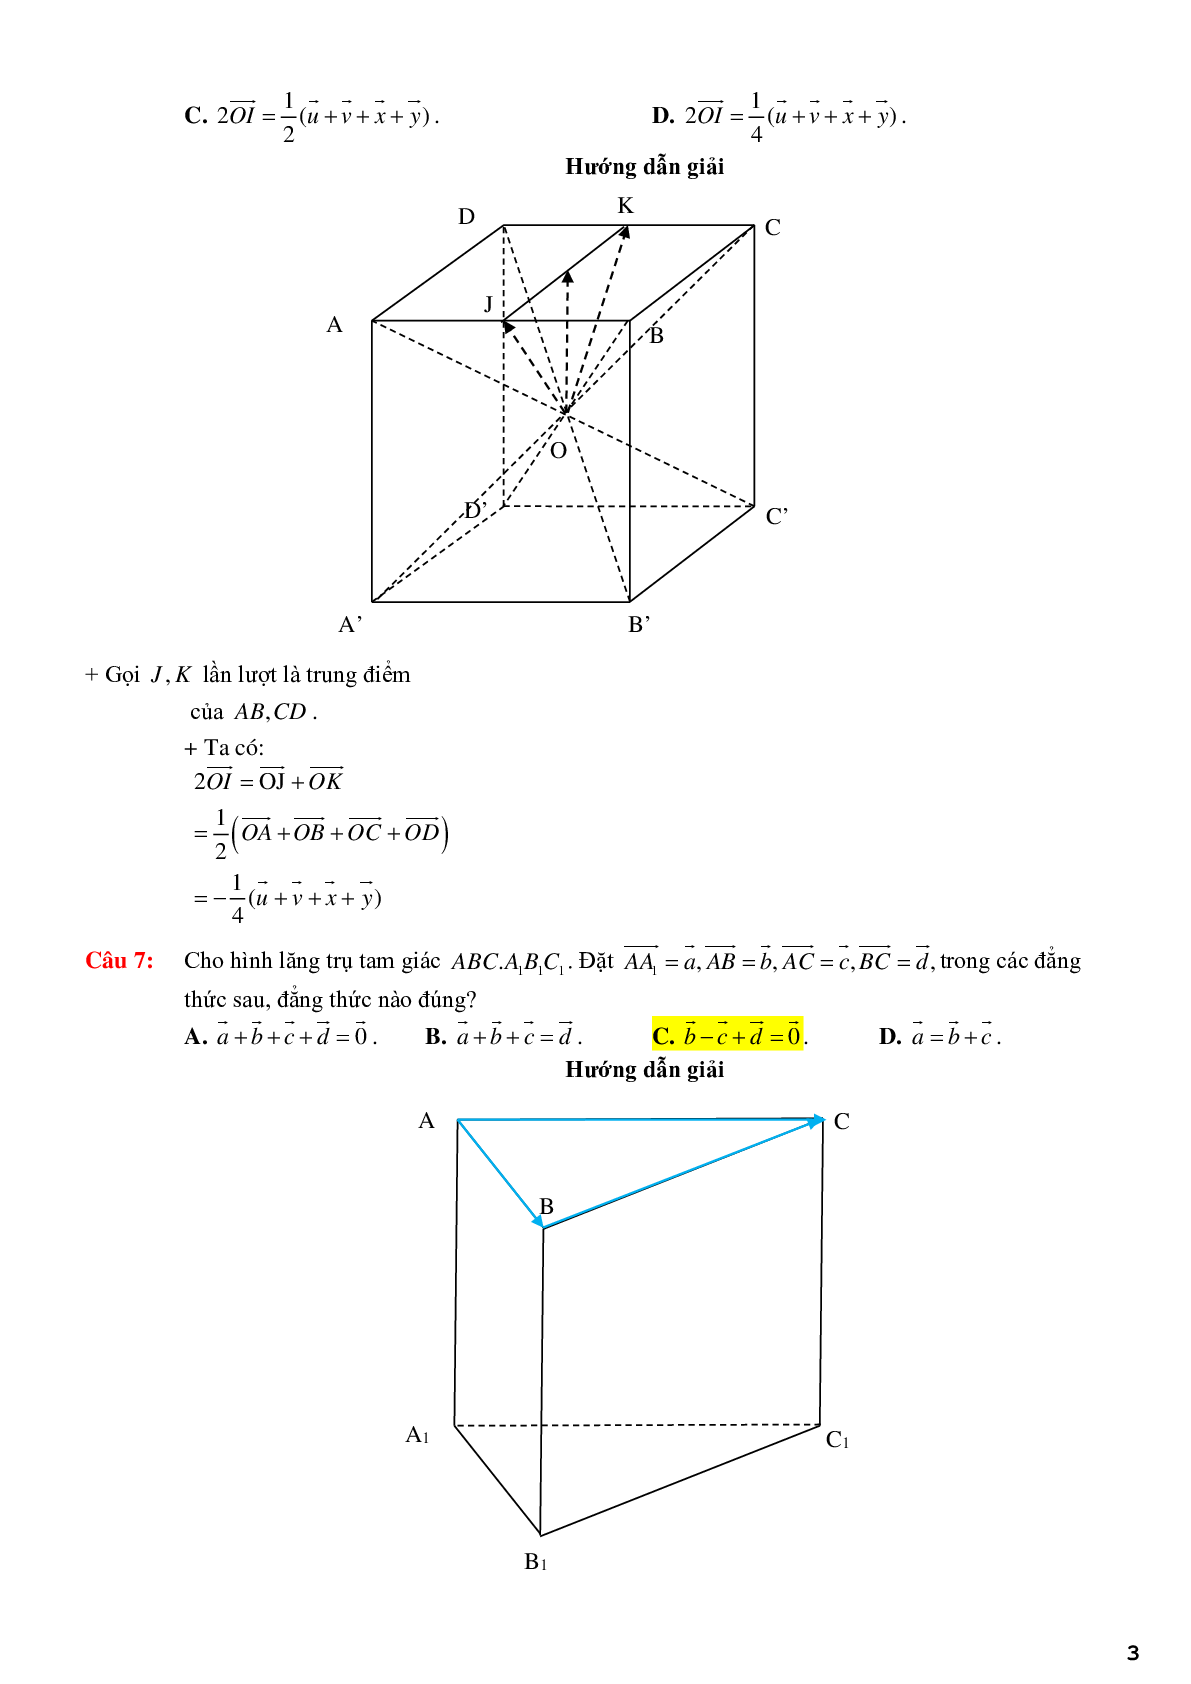 123 bài tập trắc nghiệm quan hệ vuông góc có lời giải chi tiết (trang 3)